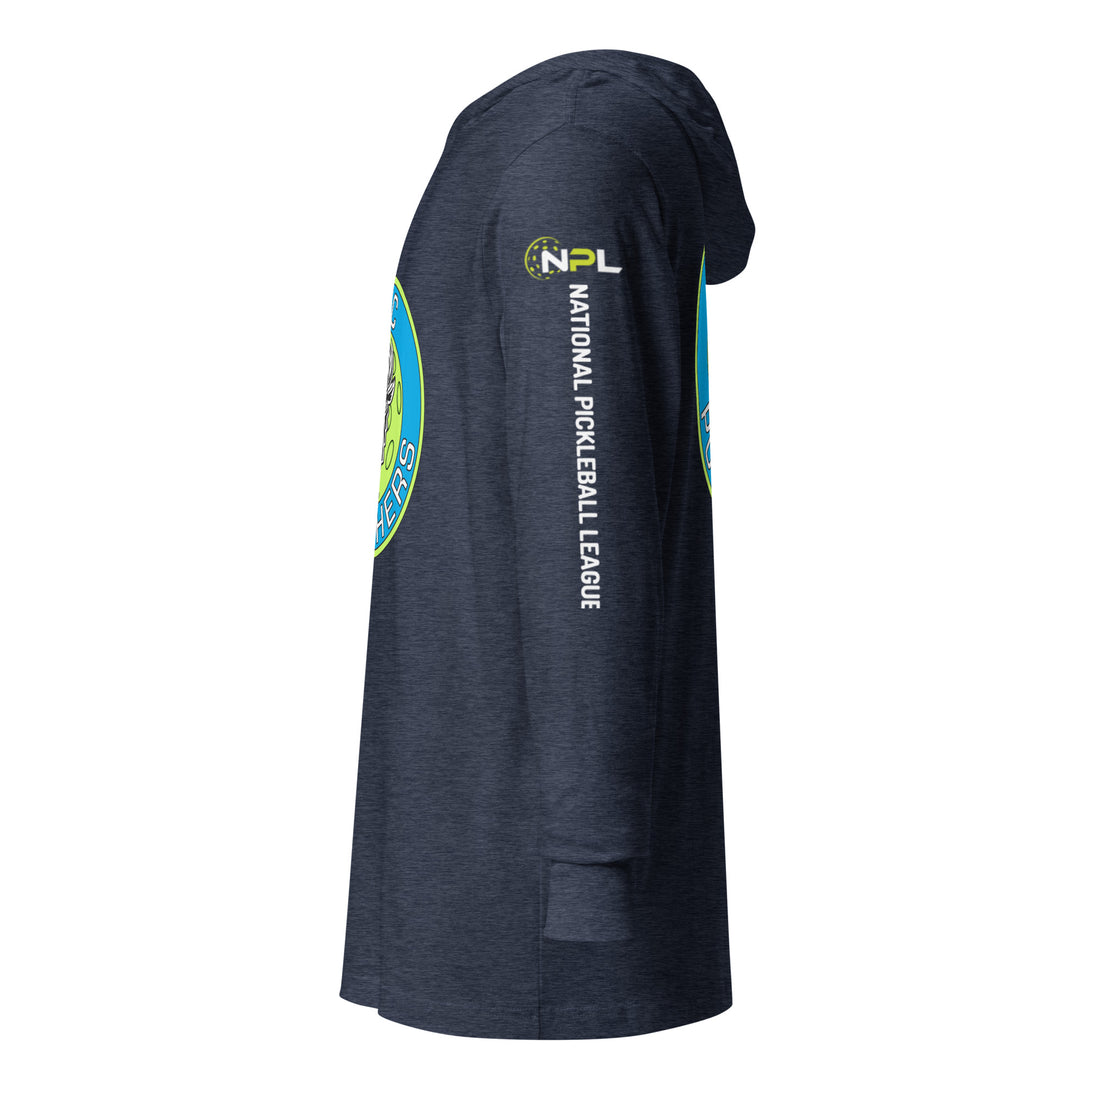 OKC Punishers™ NPL™ Hooded Long Sleeve Unisex T-Shirt!